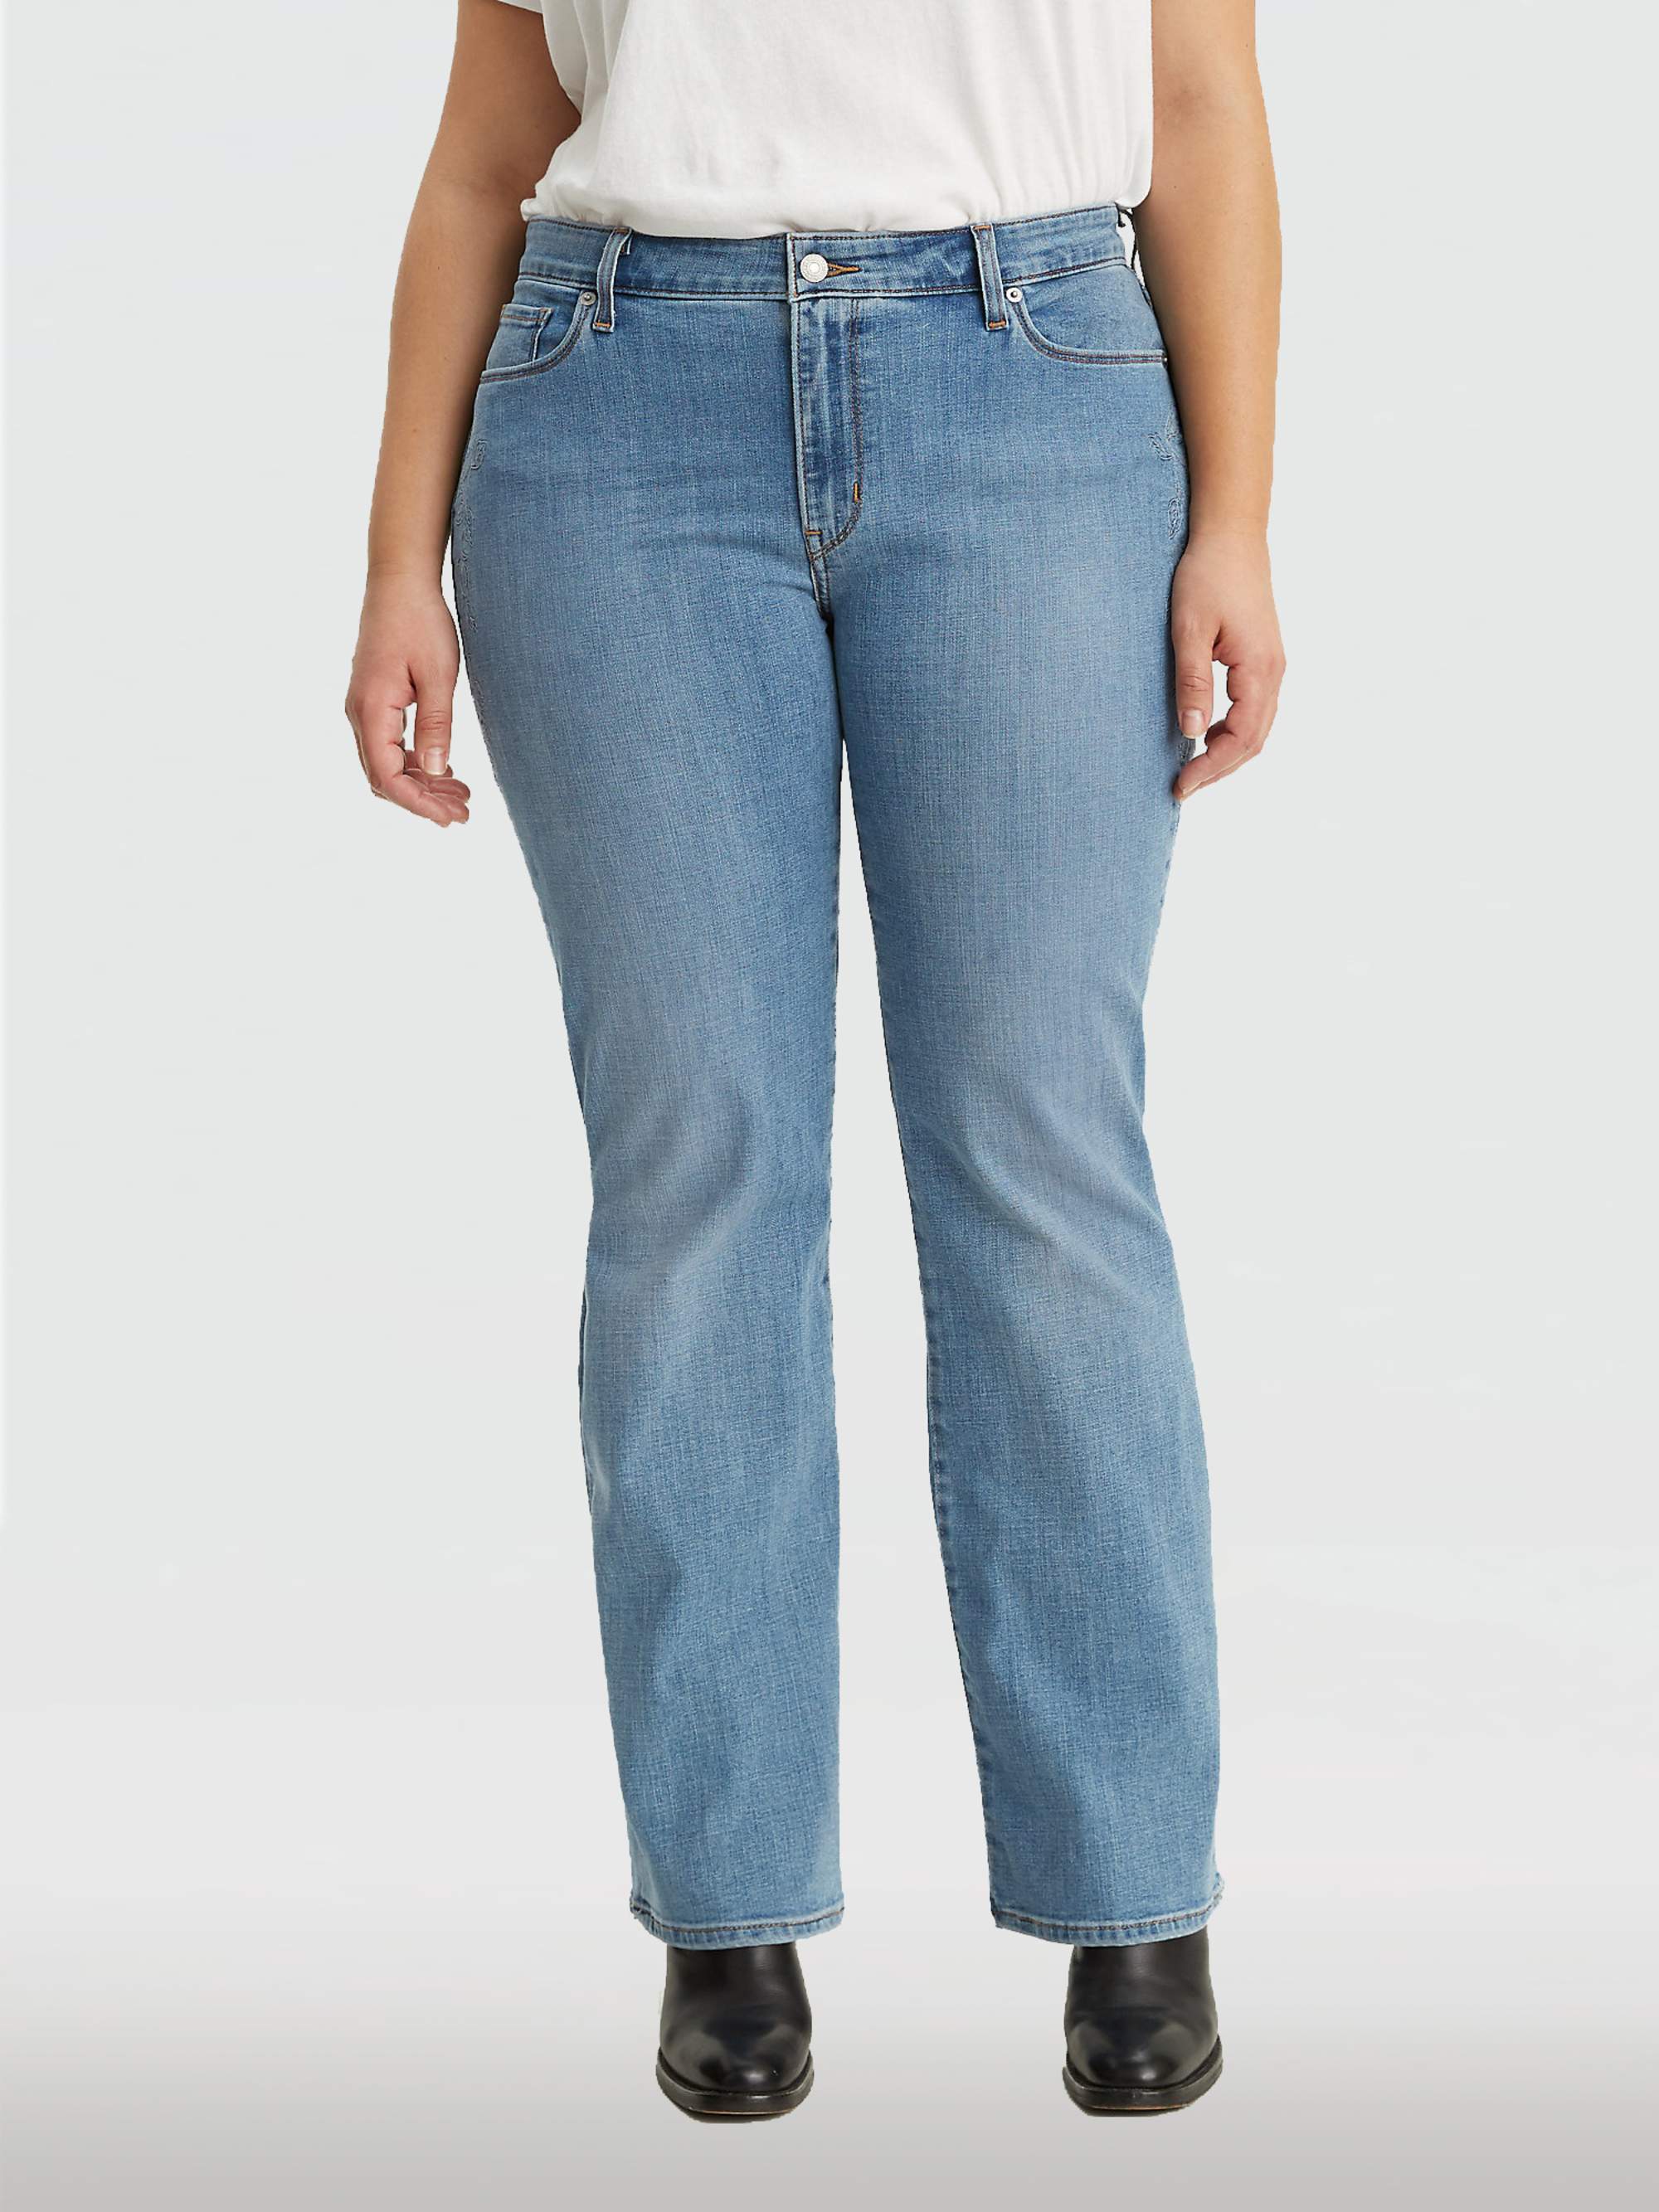 levi's 415 jeans